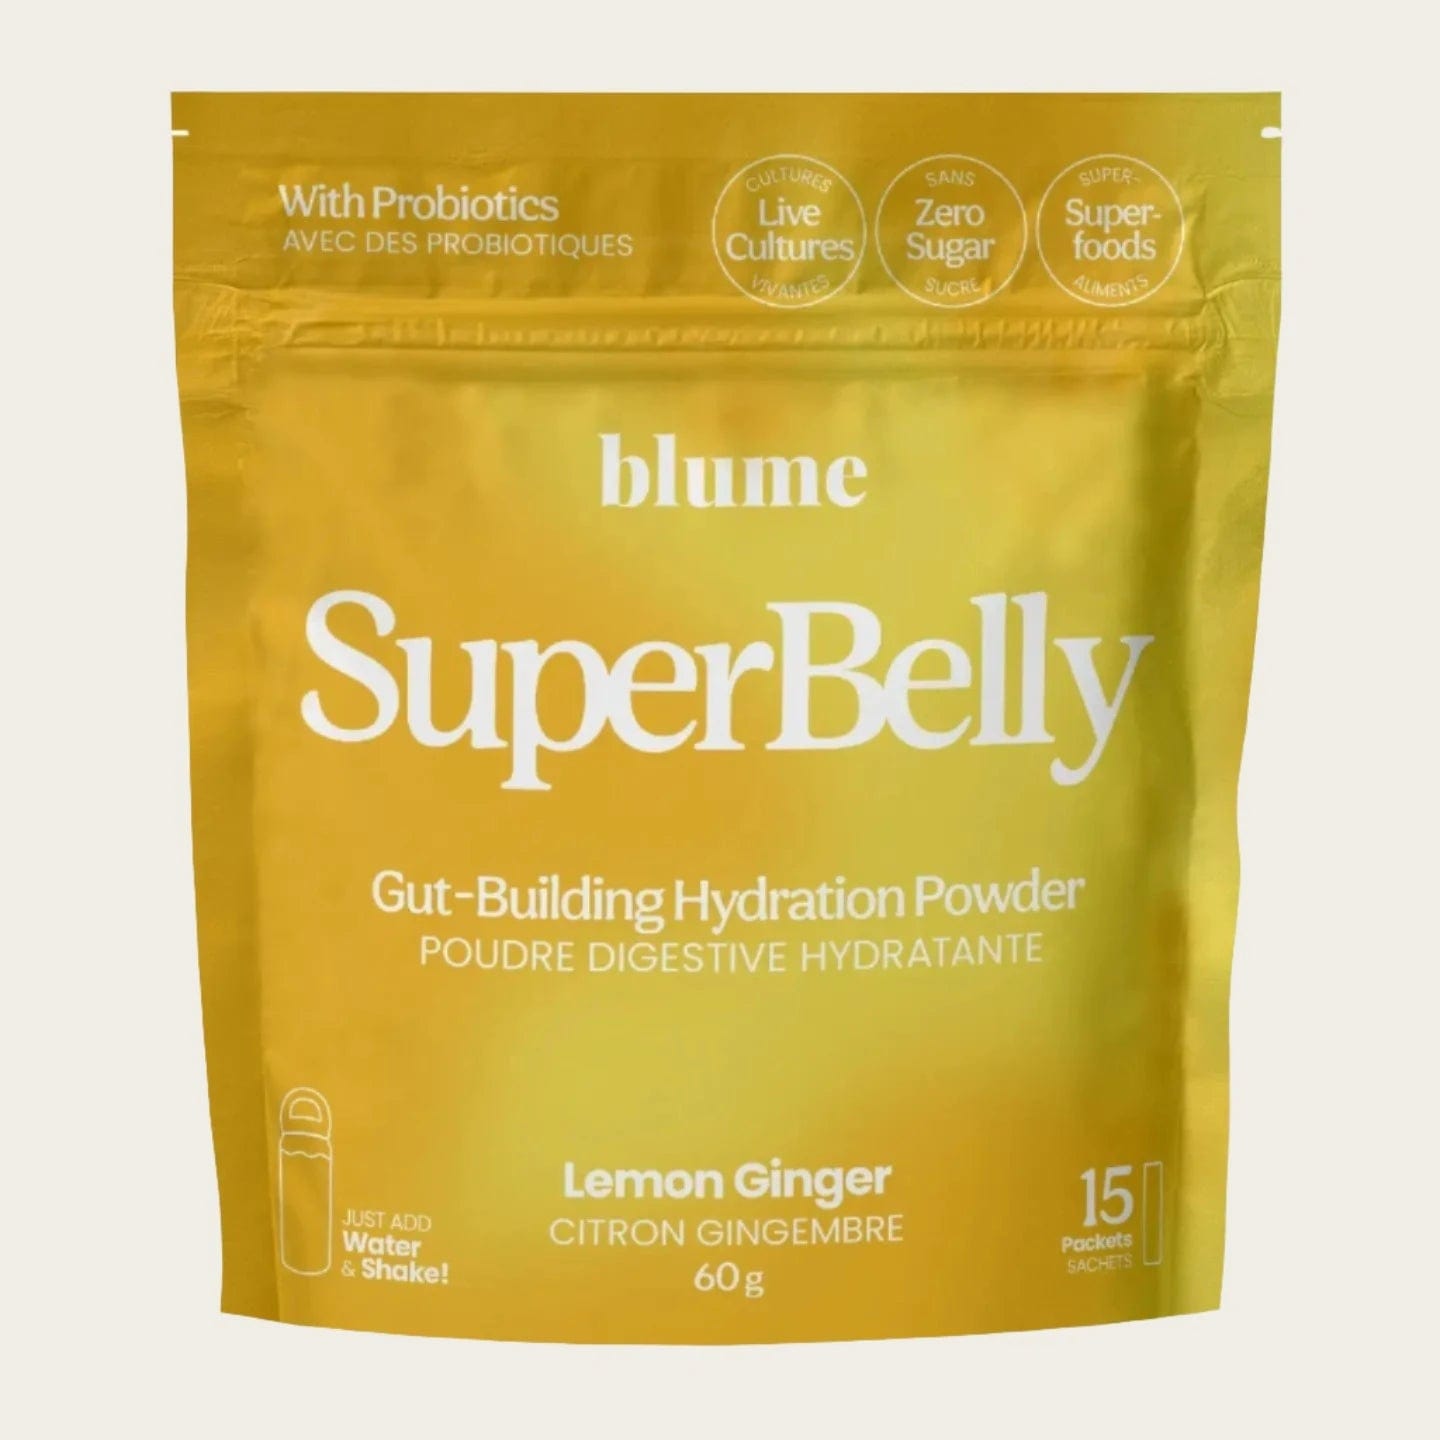 BLUME Adaptogens Superbelly Hydration & Gut Mix, Lemon Ginger sunja link - canada